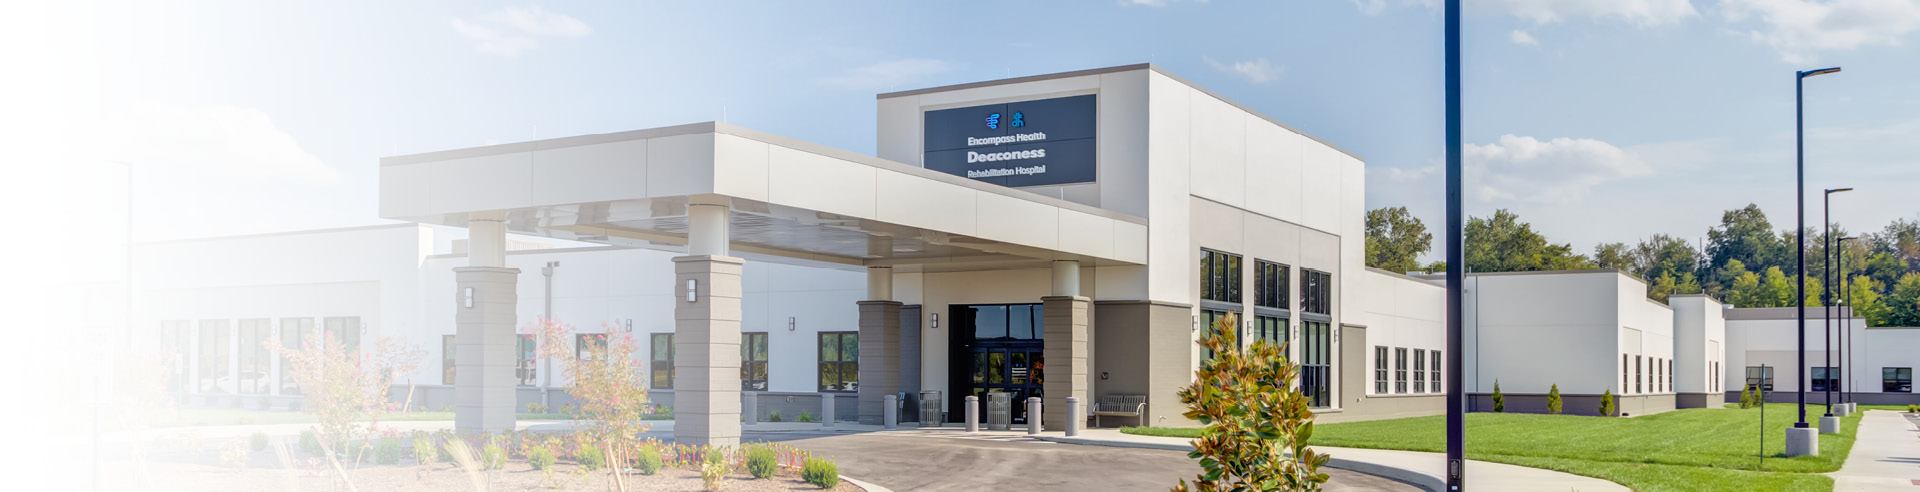 Encompass Health Deaconess Rehabilitation Hospital exterior